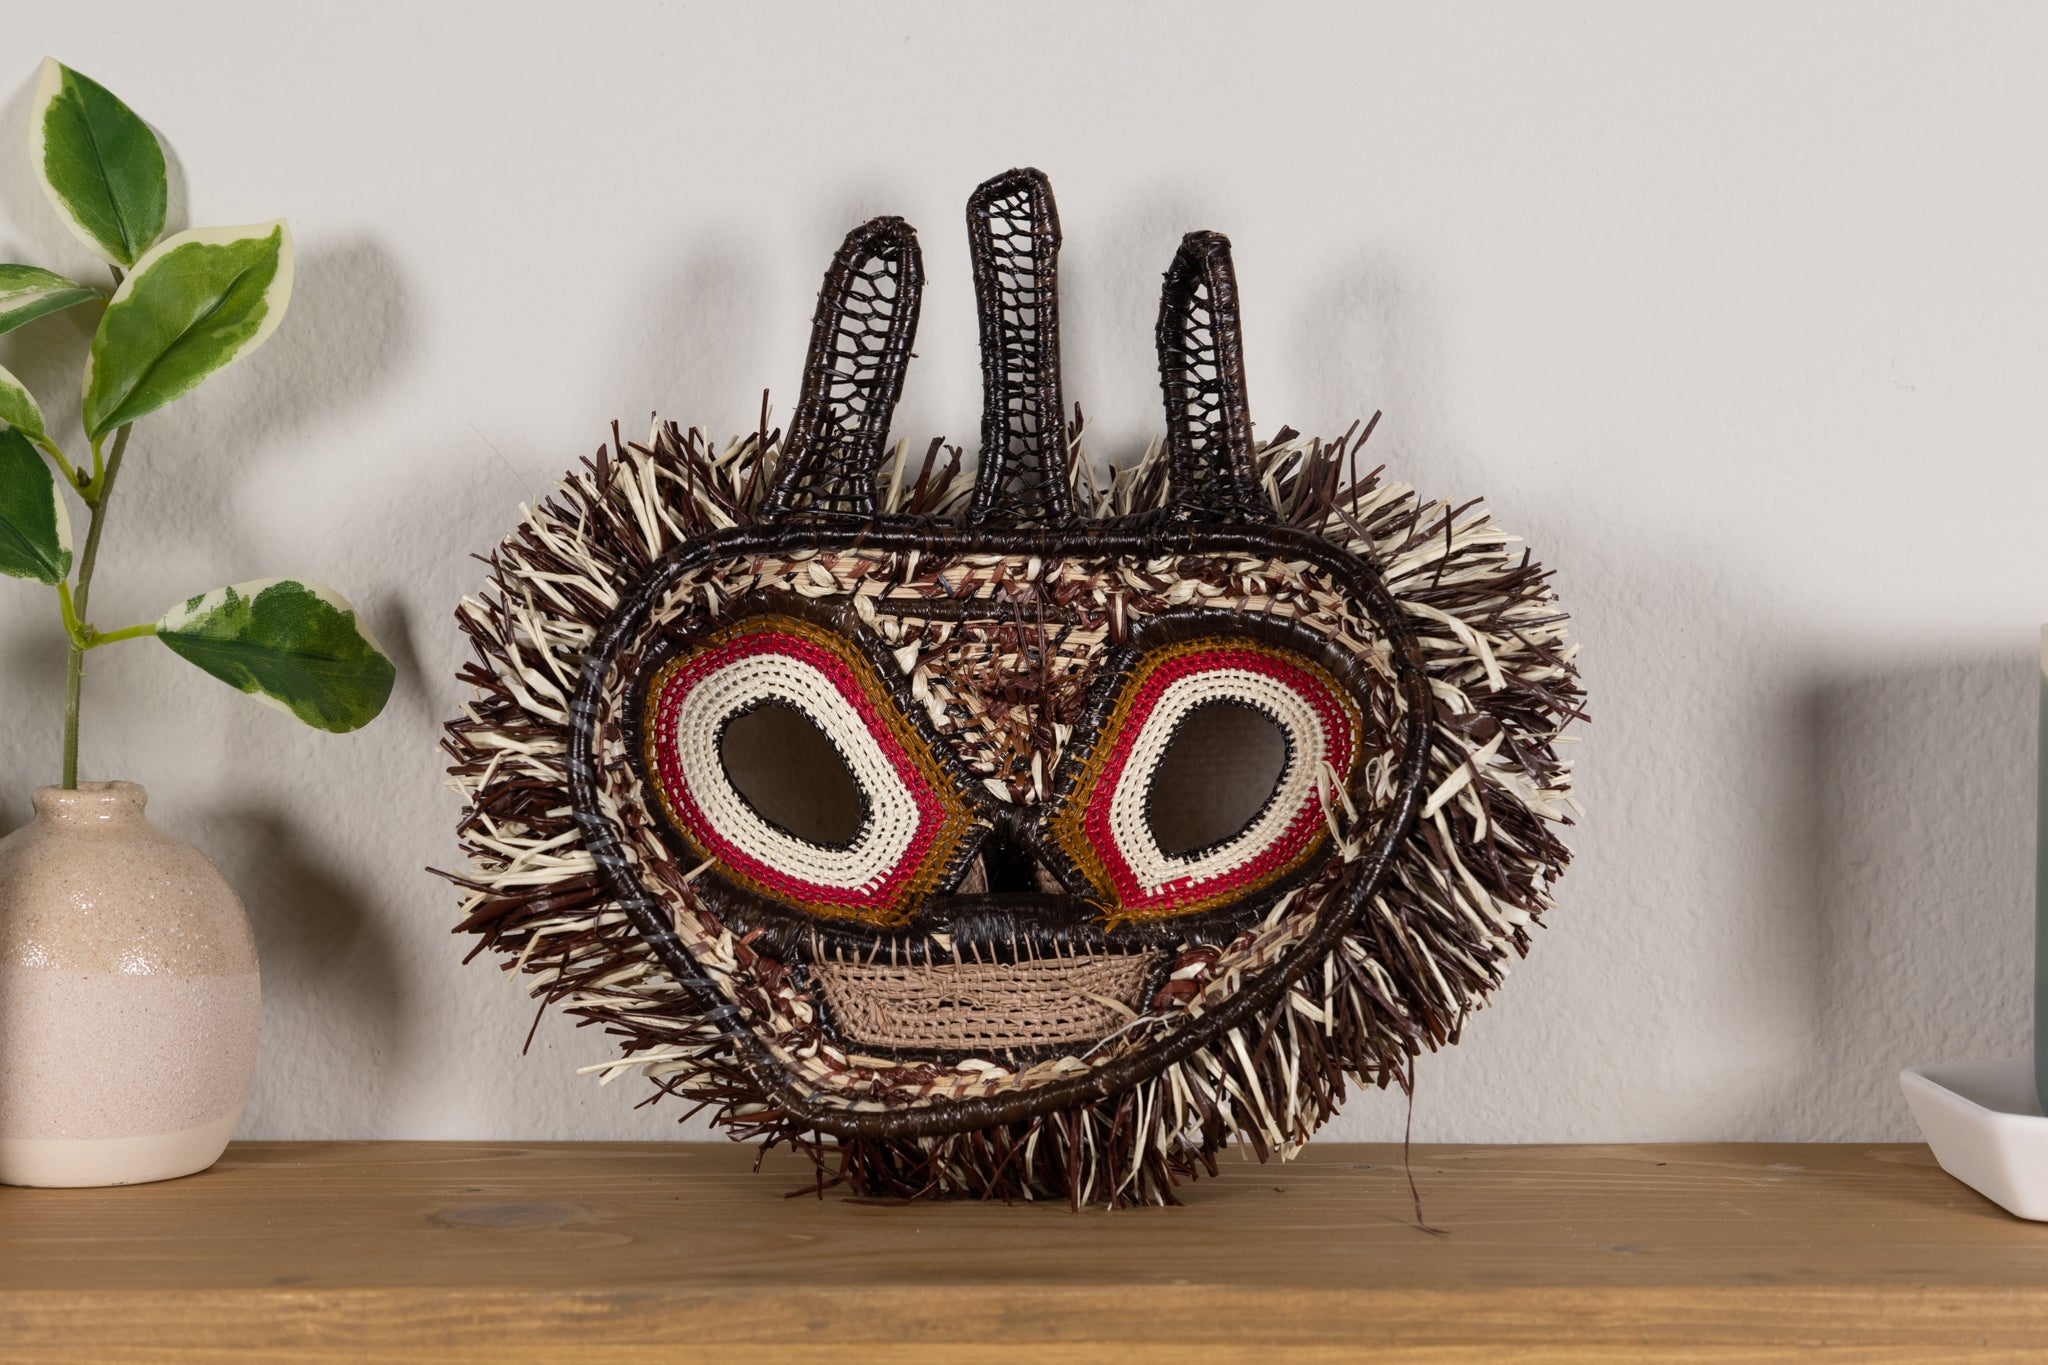 Whiskered Screech Owl Mask